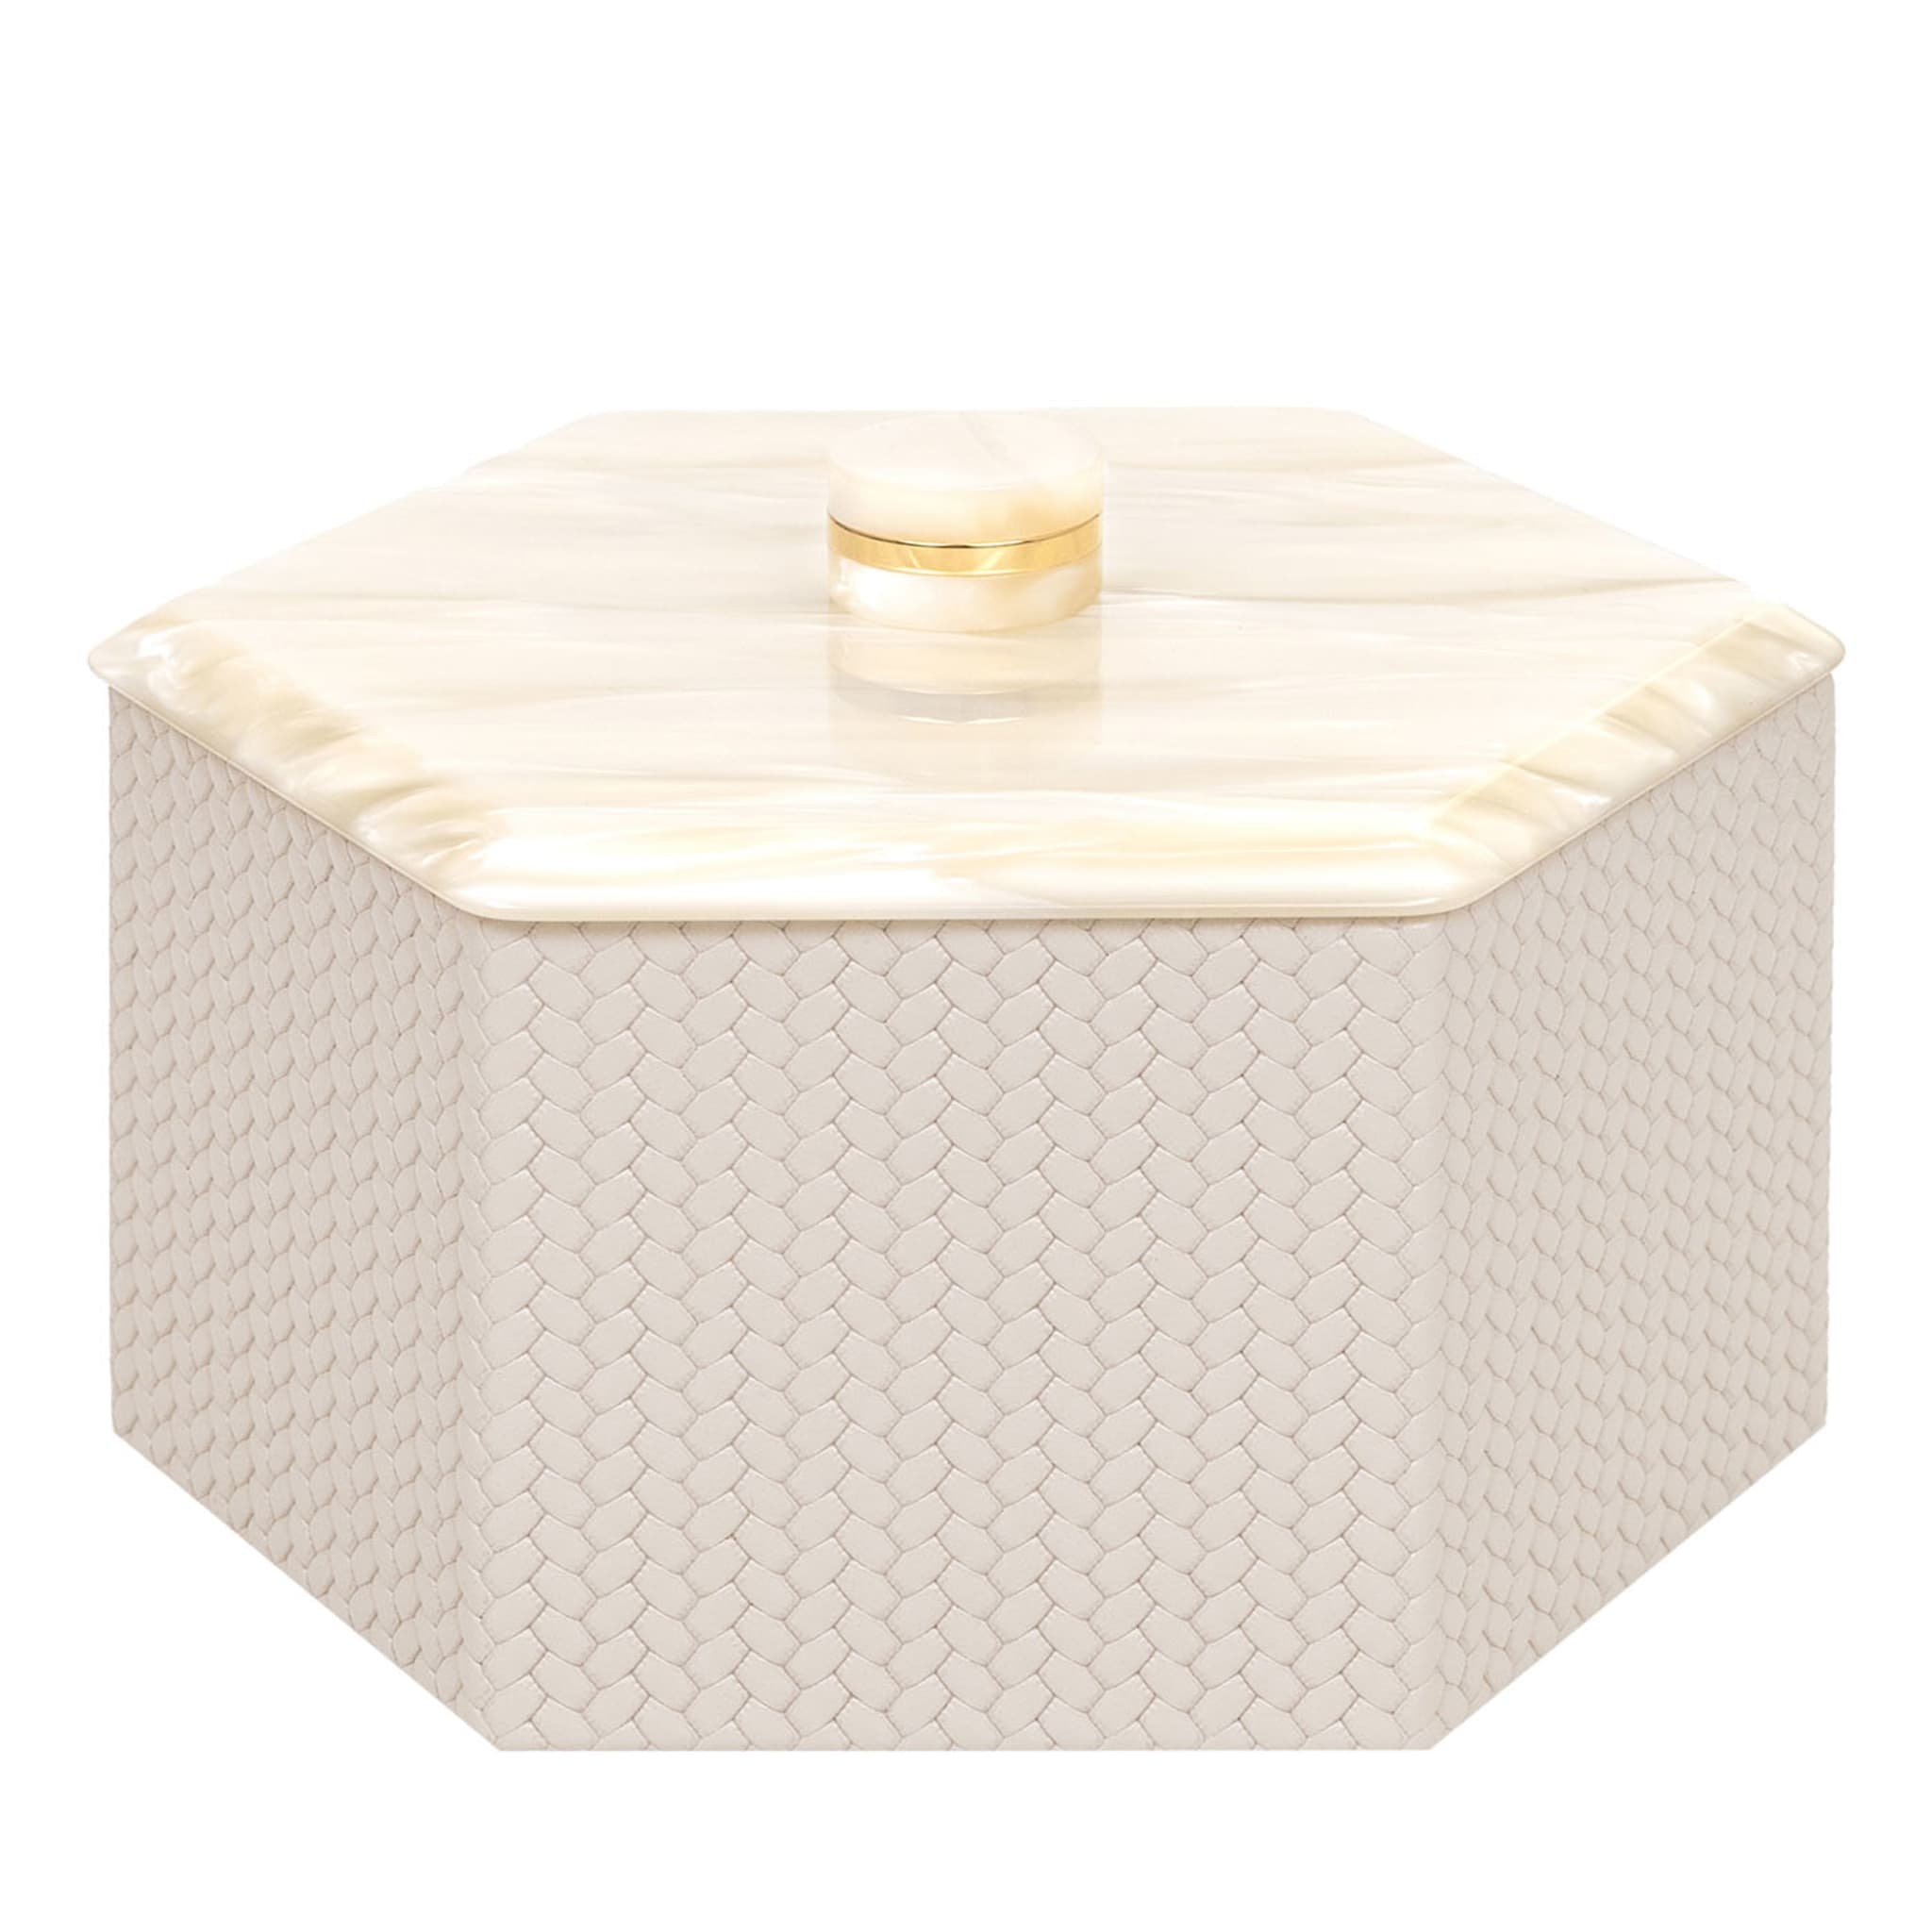 Kelly Petite boîte à crème hexagonale avec couvercle - Vue principale